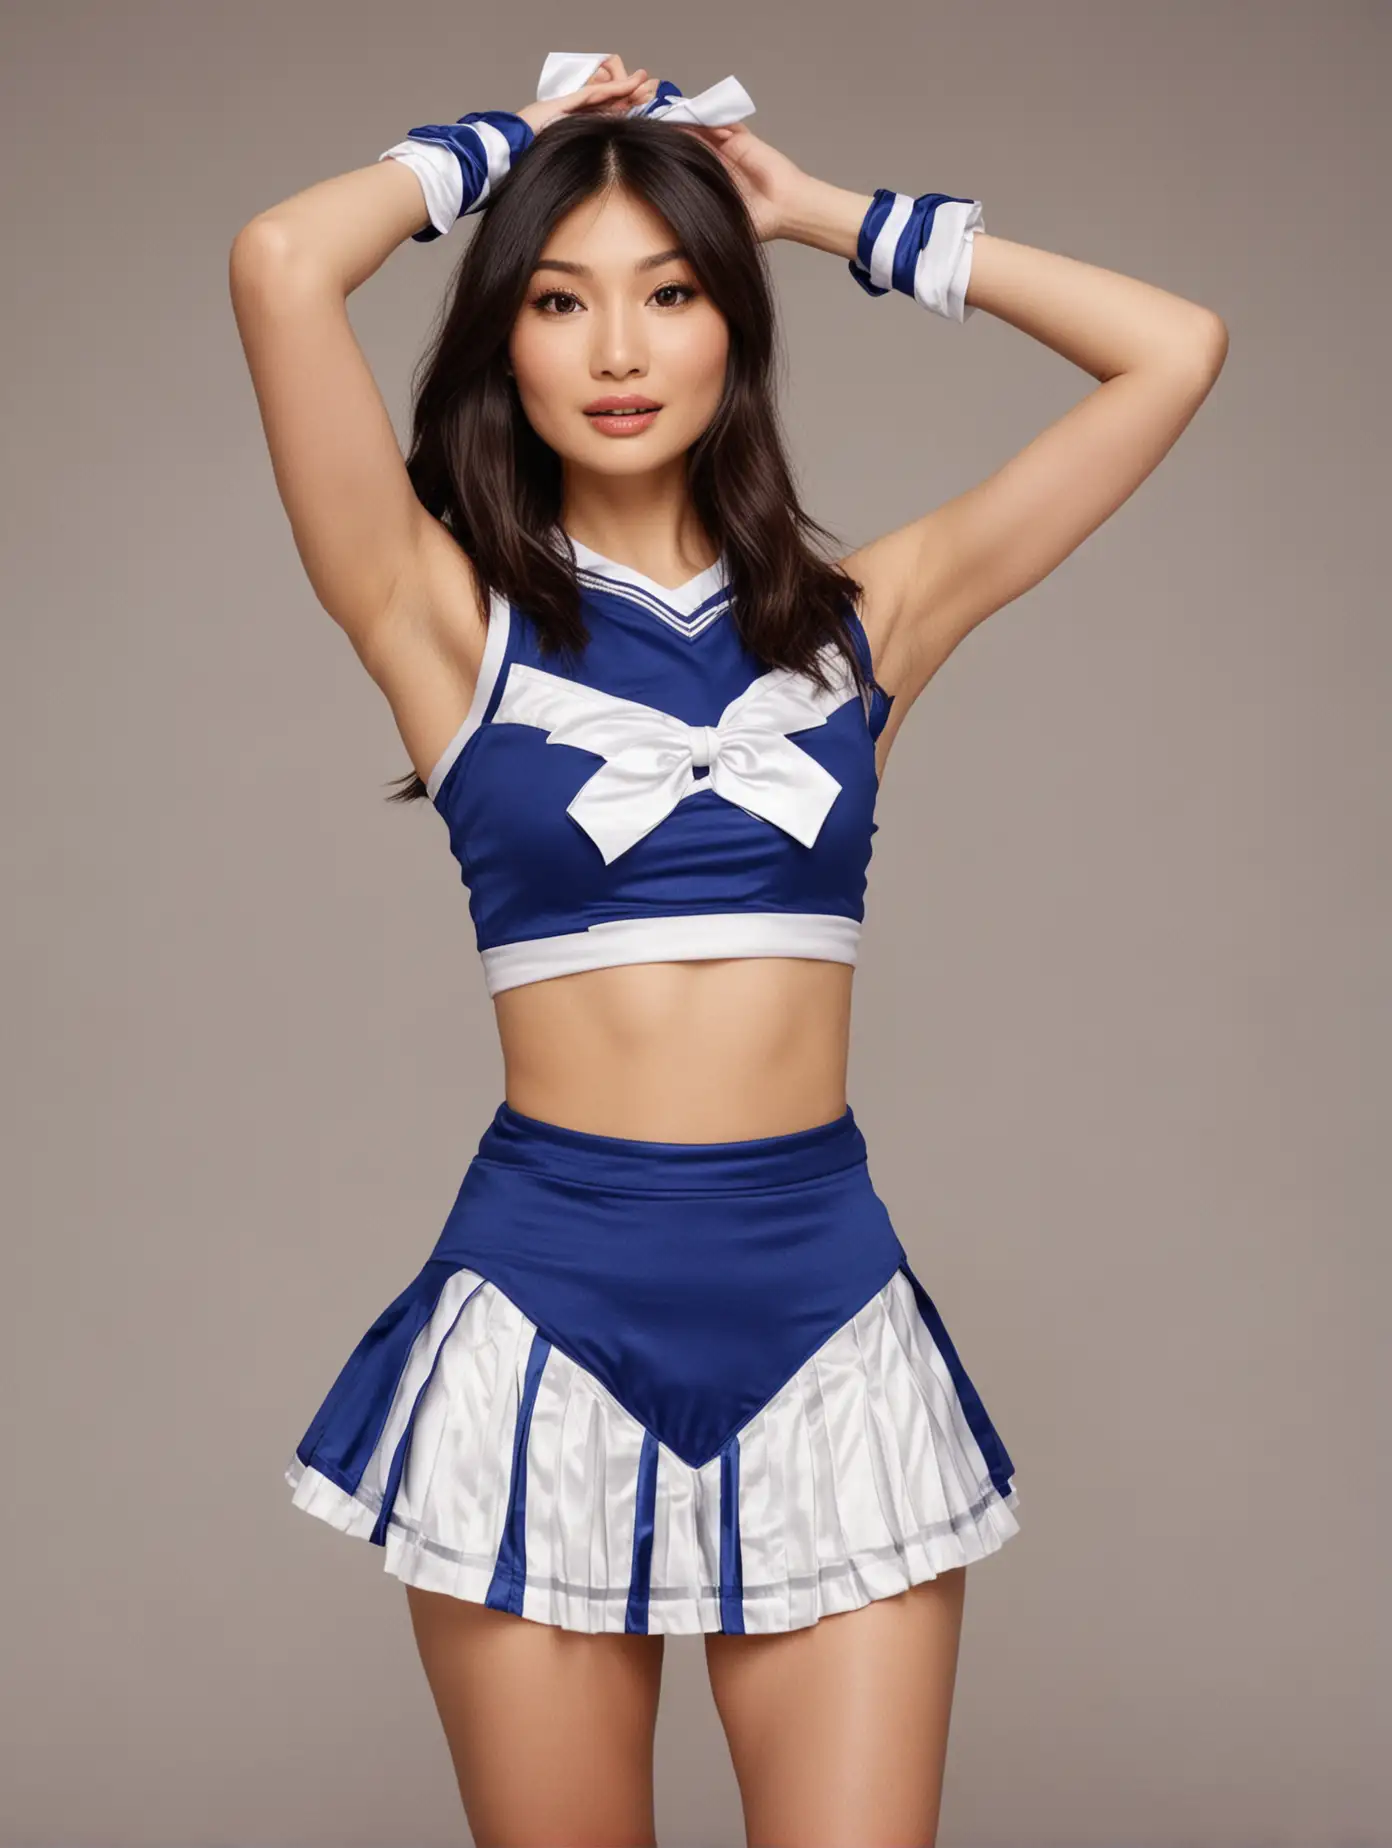 Gemma-Chan-Cheerleader-Stunning-in-Blue-and-White-Attire